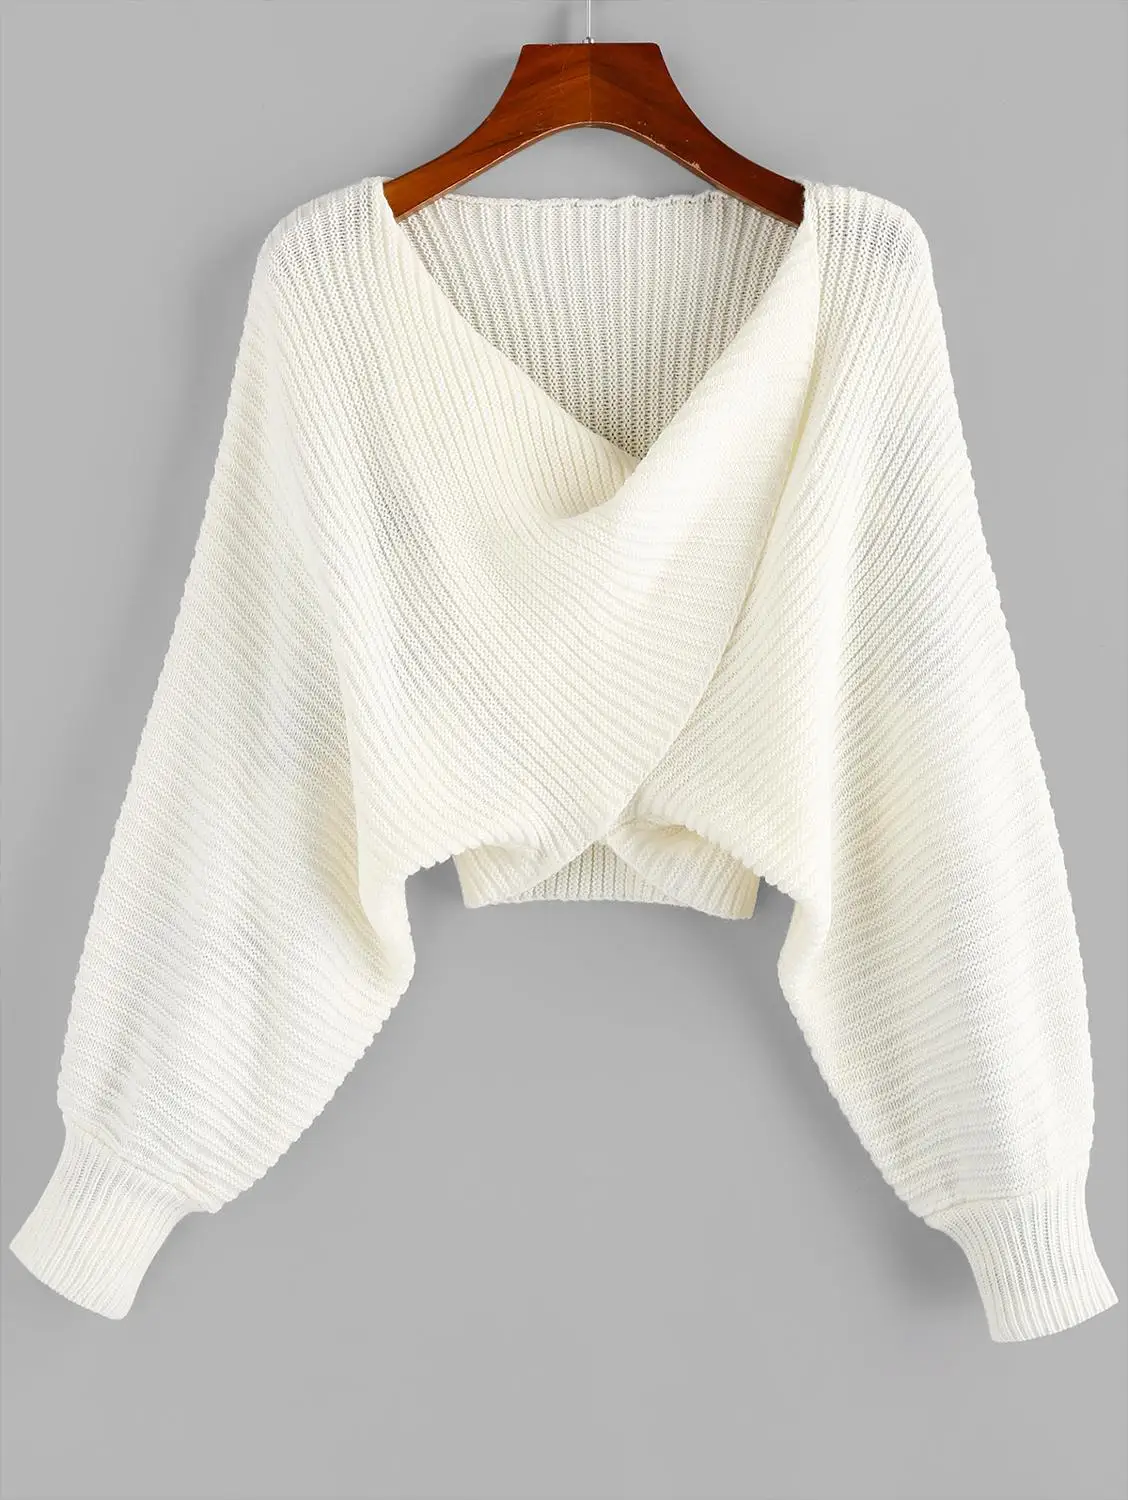 ZAFUL, крученый Асимметричный короткий свитер, Женский Теплый Однотонный пуловер, рукав летучая мышь, сексуальный свитер,, Осень-зима, повседневный женский свитер - Цвет: White